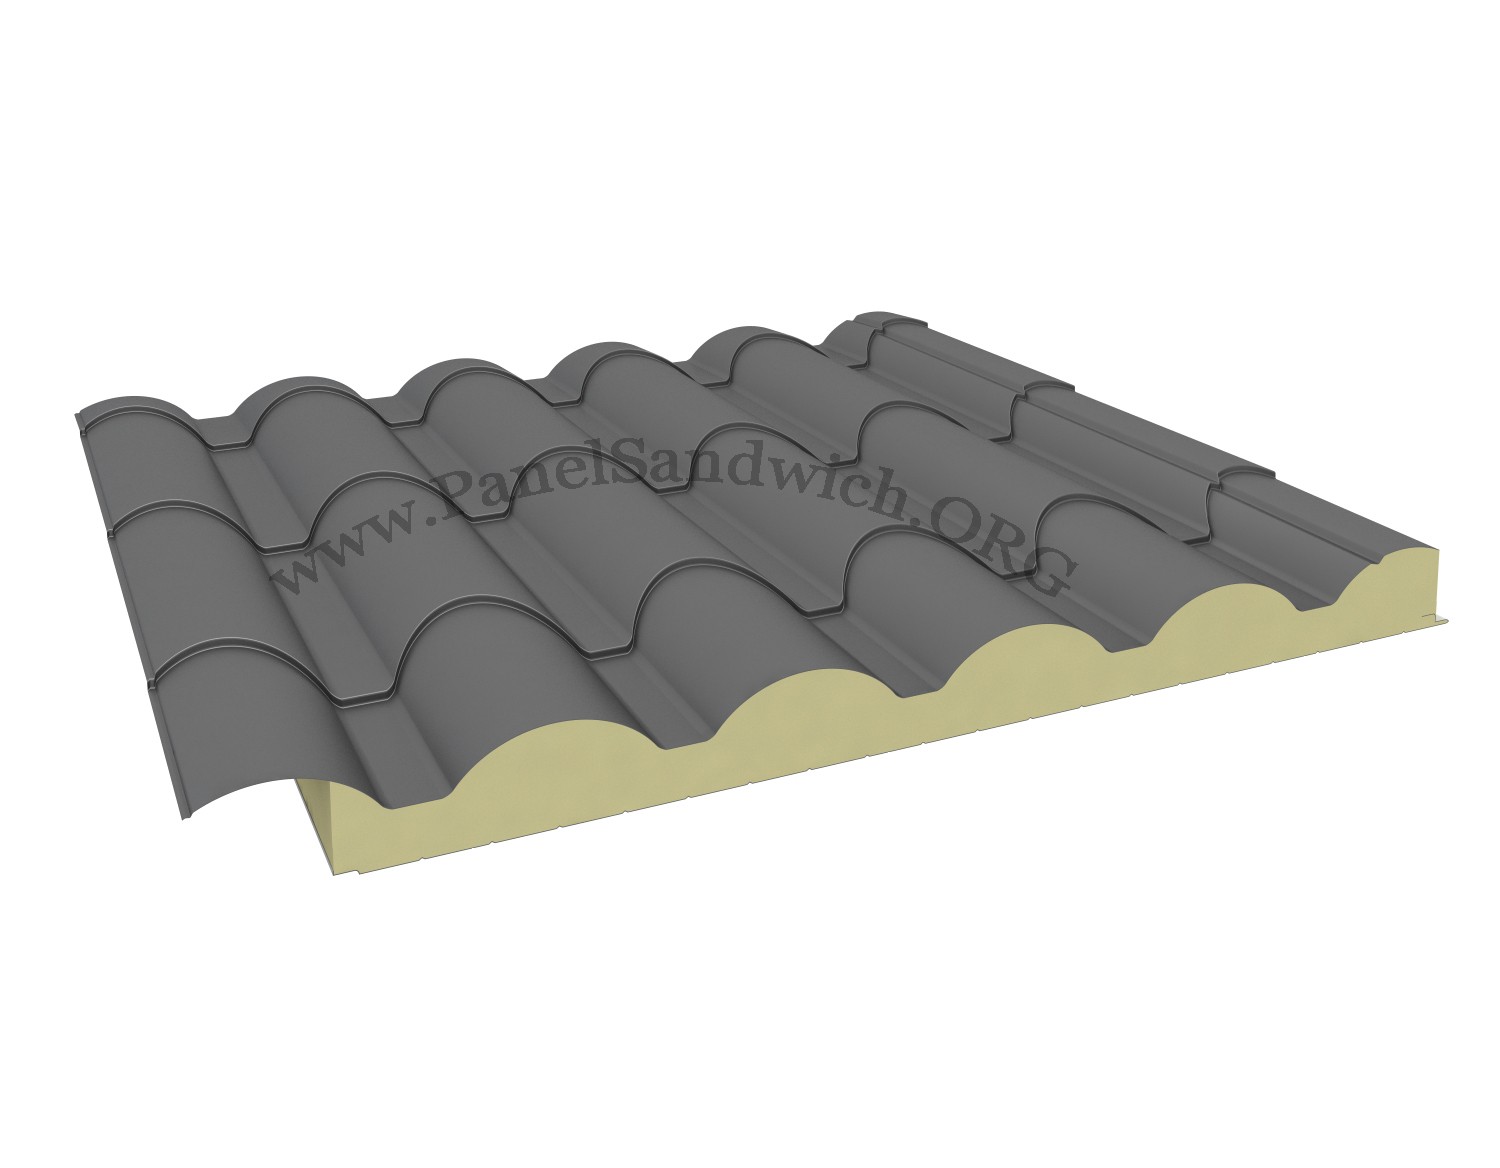 Agropanel Sandwich Panel - Roof Tile Shape